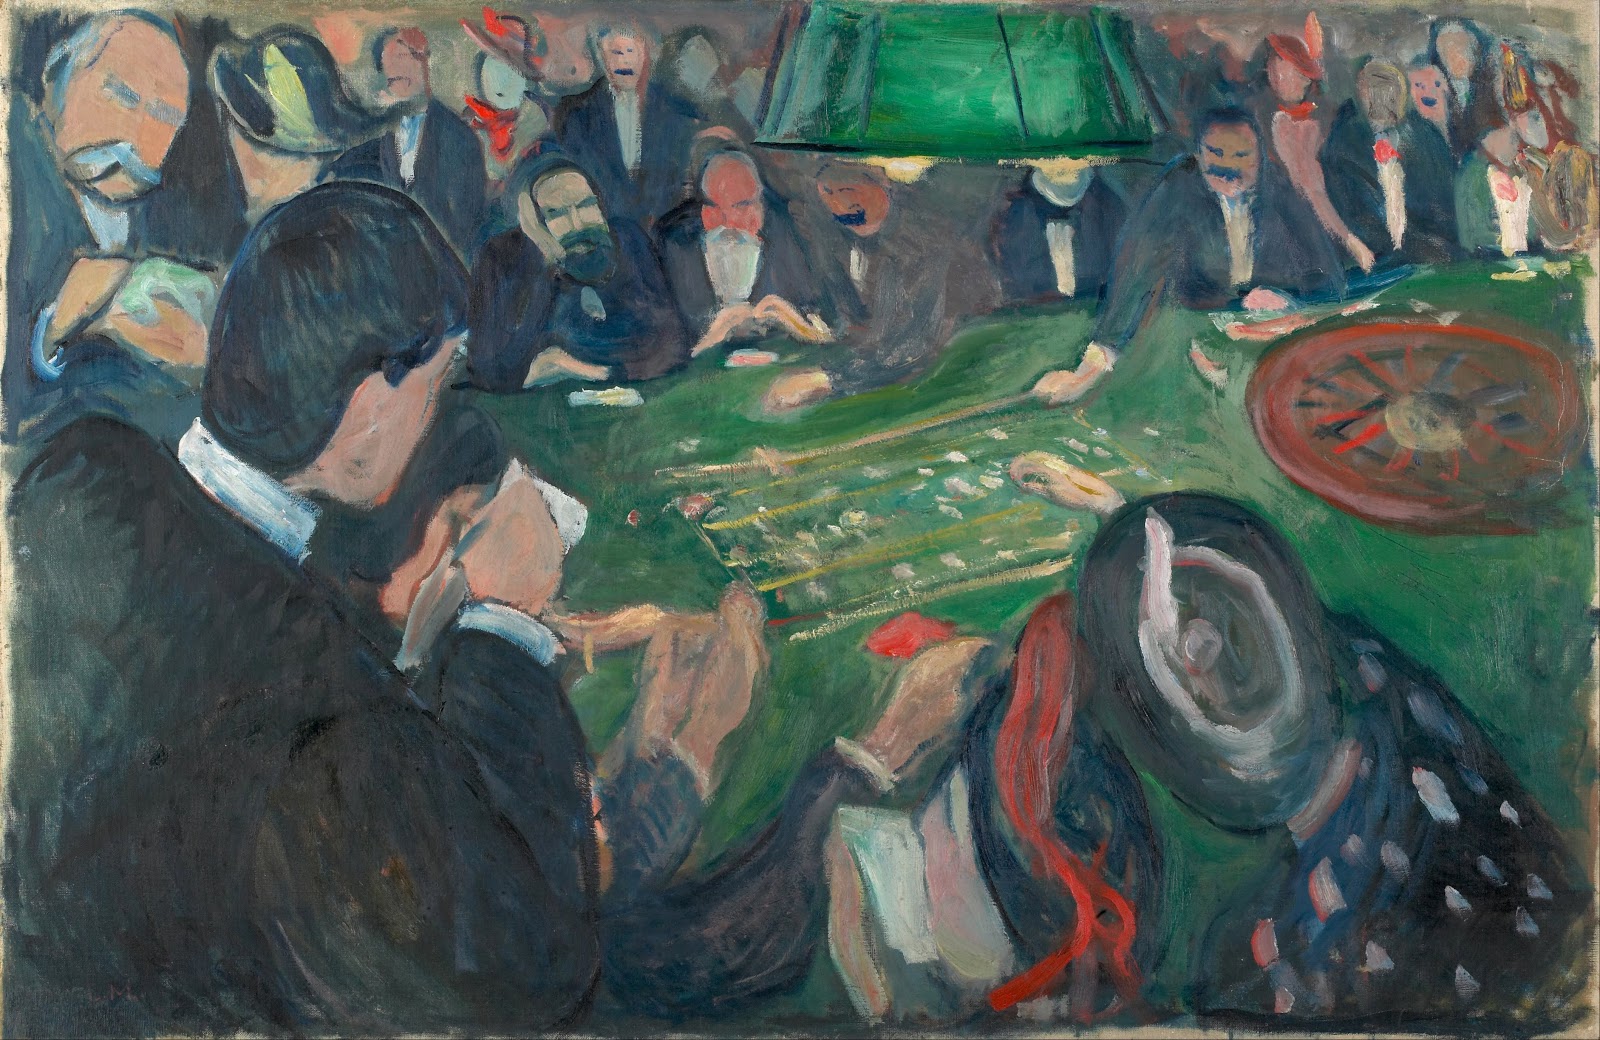 Edvard+Munch-1863-1944 (10).jpg